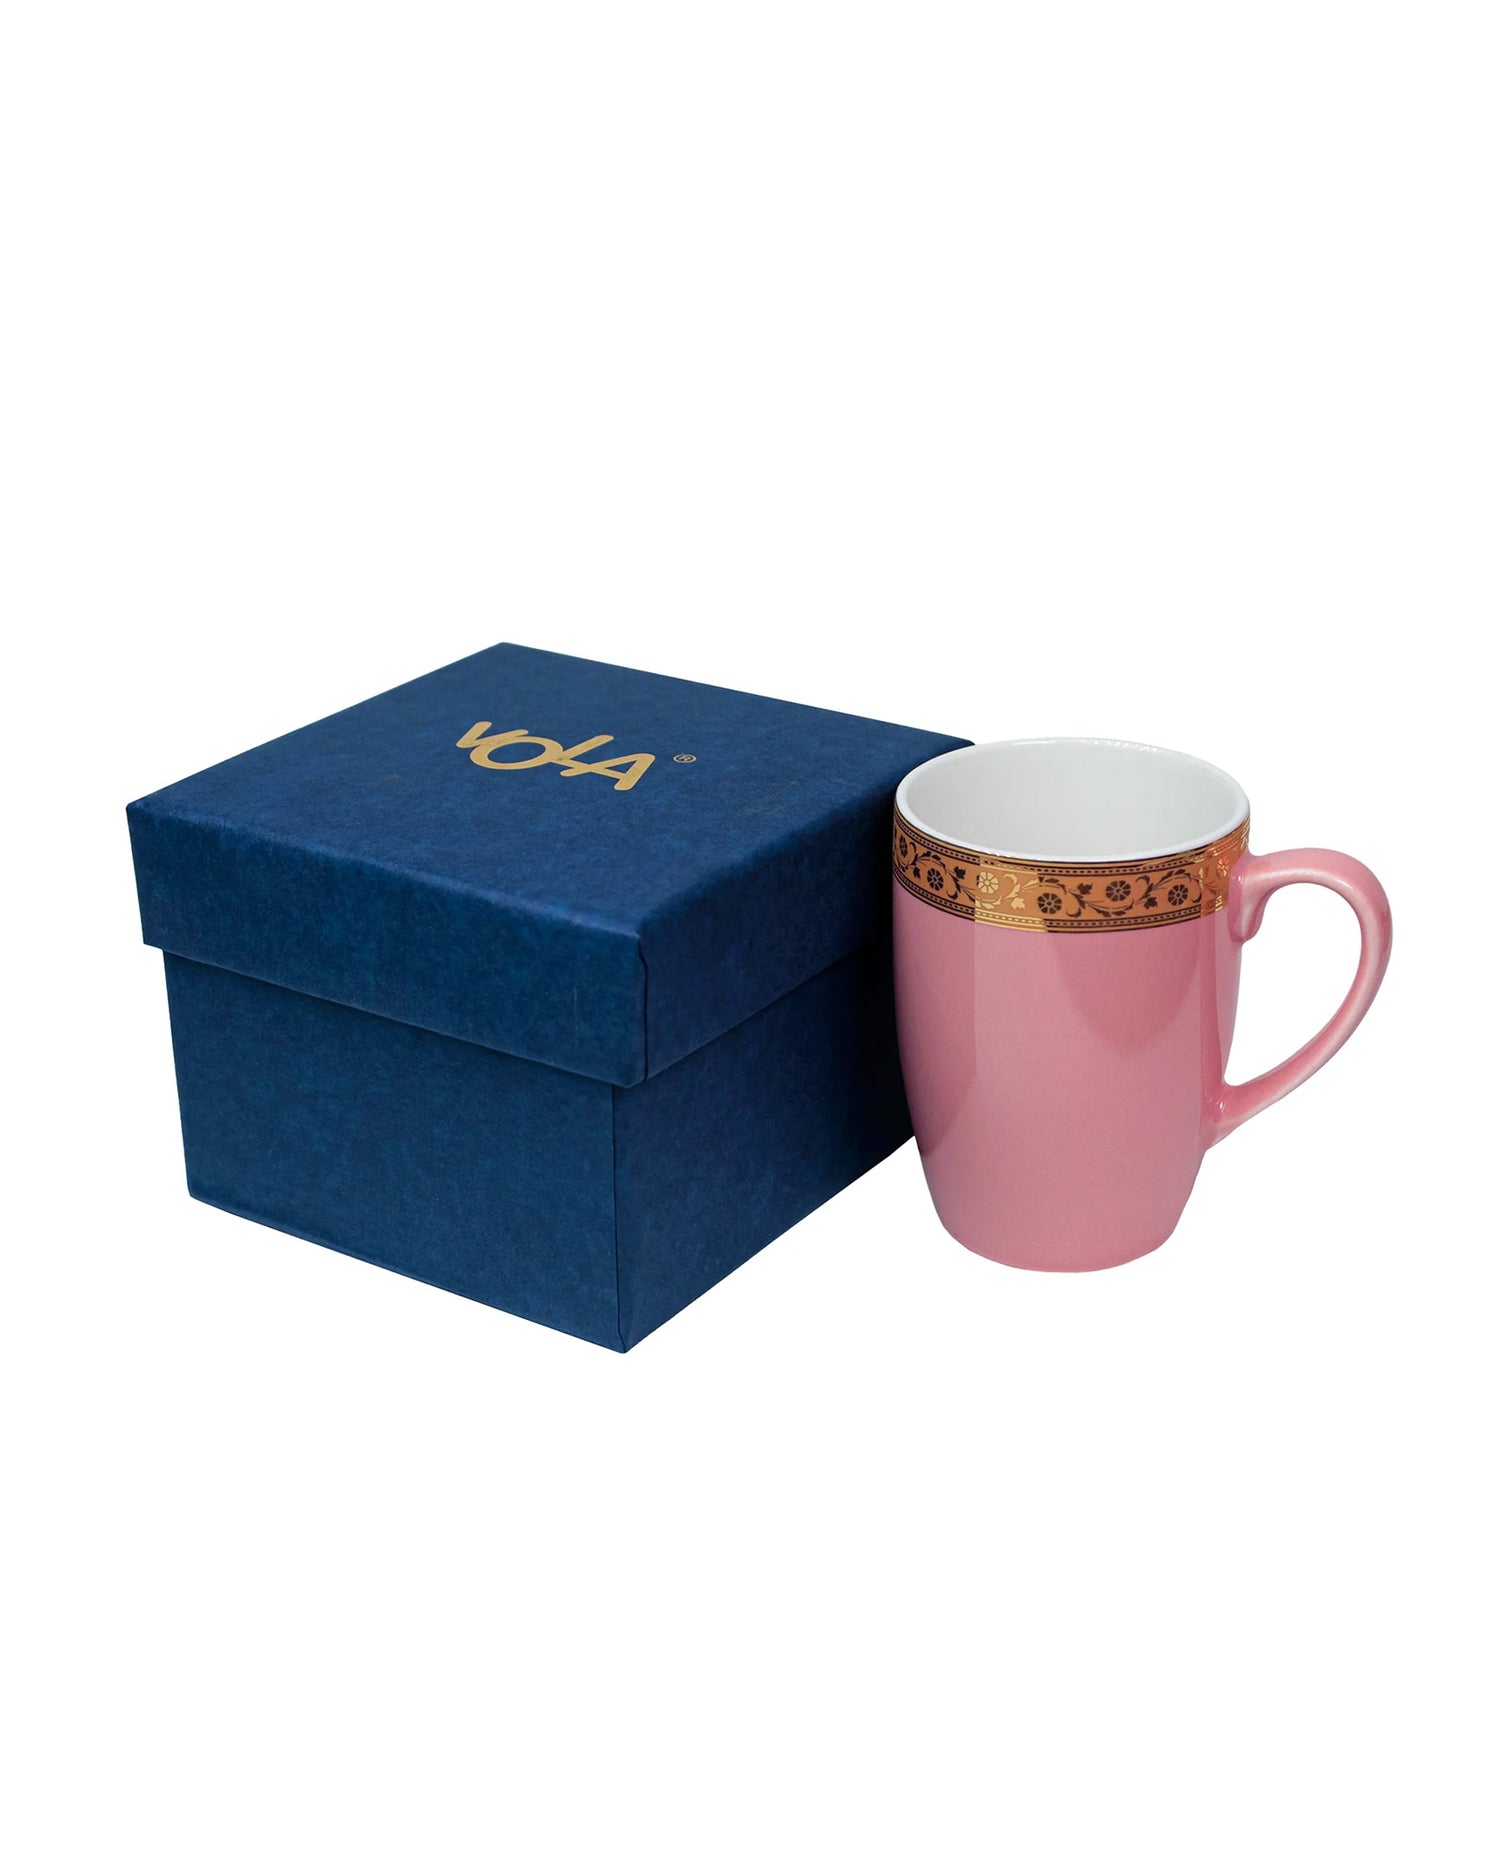 BLOOMING DALHIA / Single pc * 230ml || Scarlet: Premium Porcelain Mugs in Pastel Colors